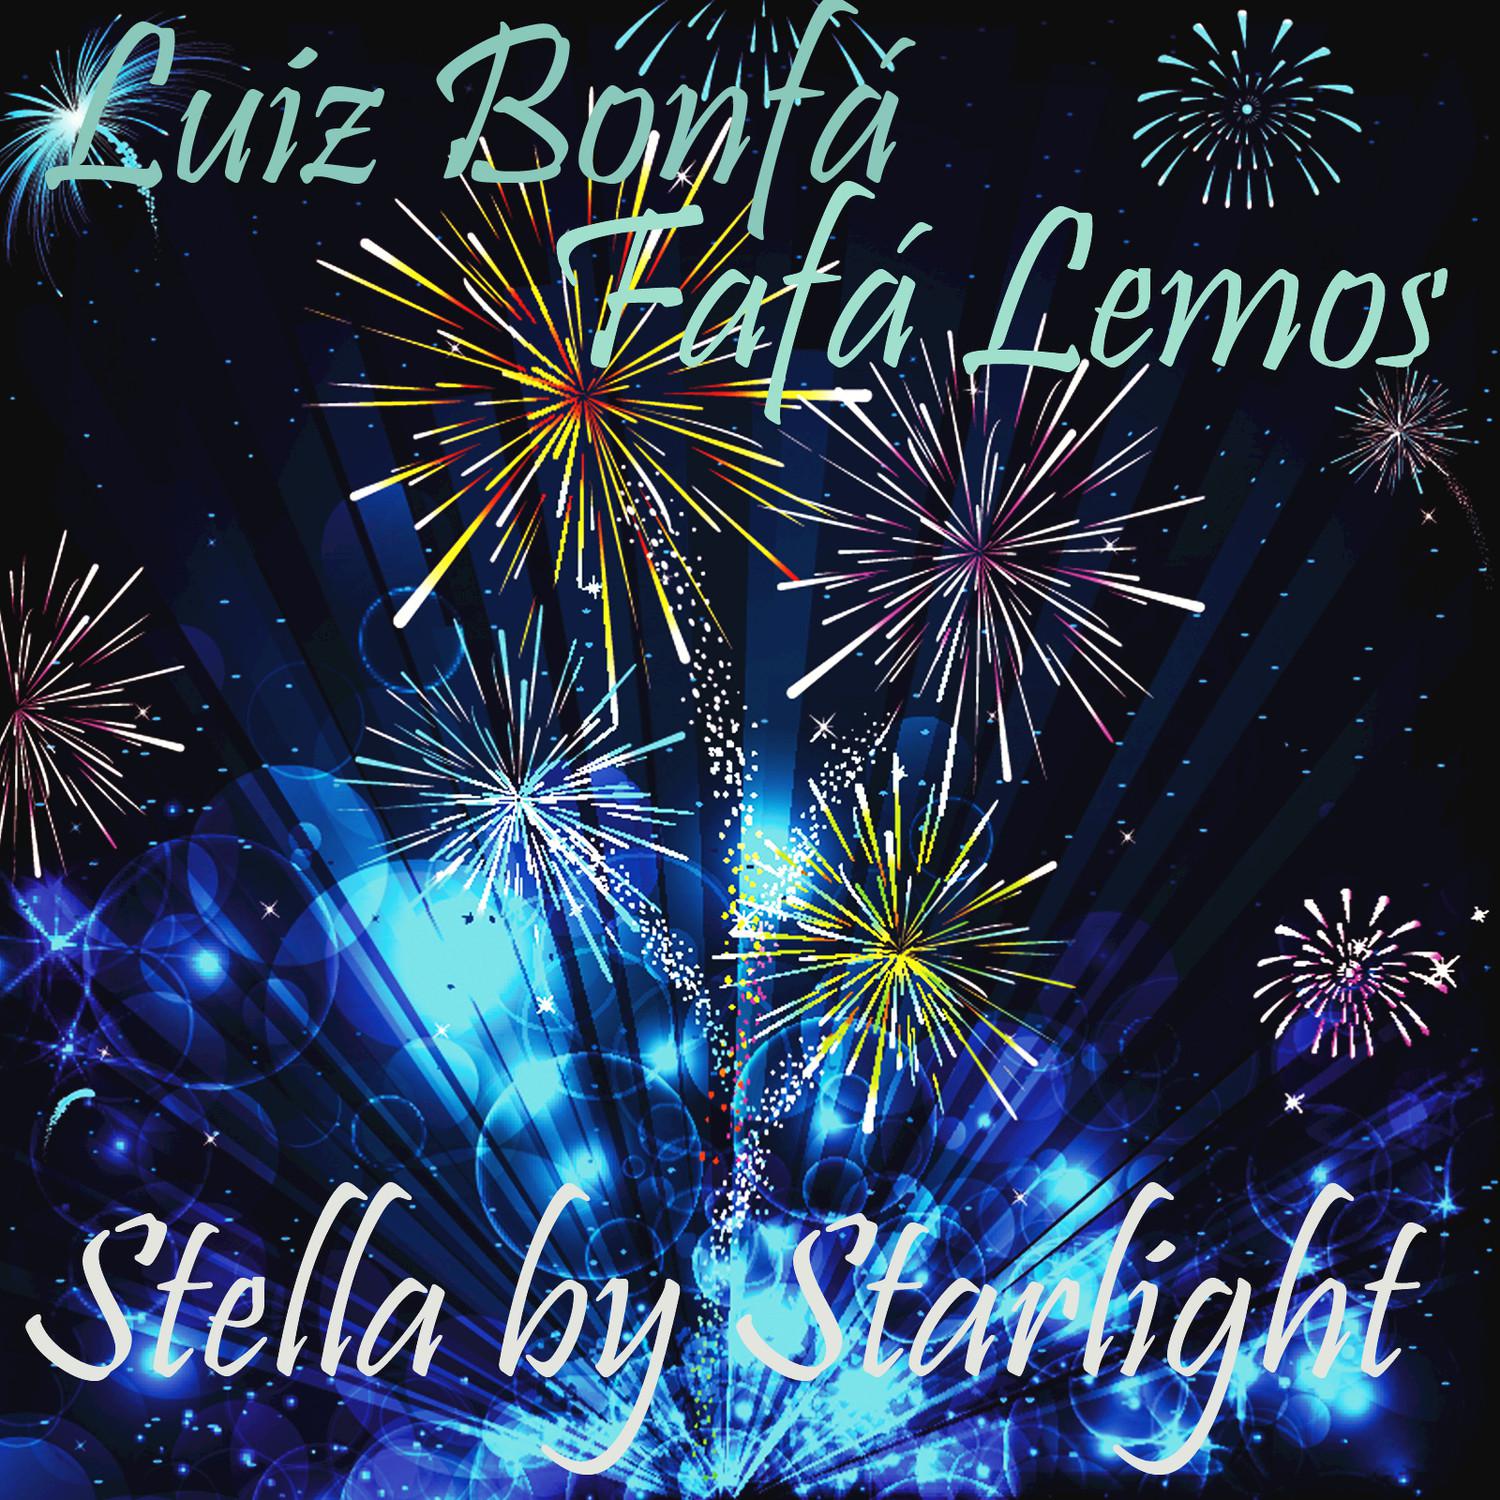 Stella by Starlight